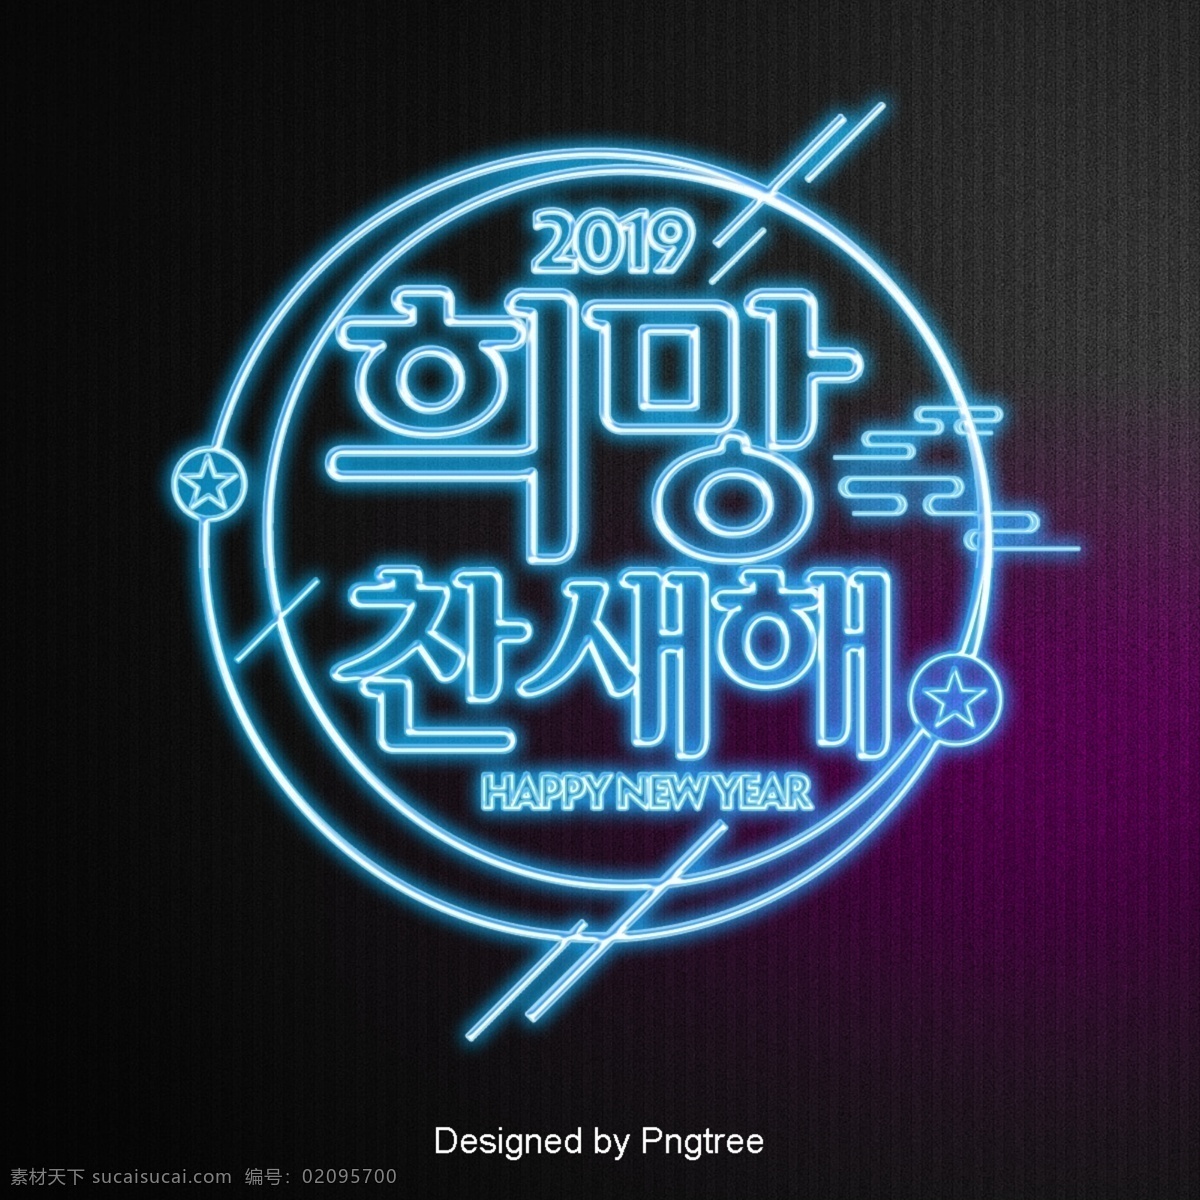 希望 韩国 场景 霓虹灯 效果 字体 2019 简单 线 发光 祝你新年快乐 现场 时尚 字形 现代 的效果